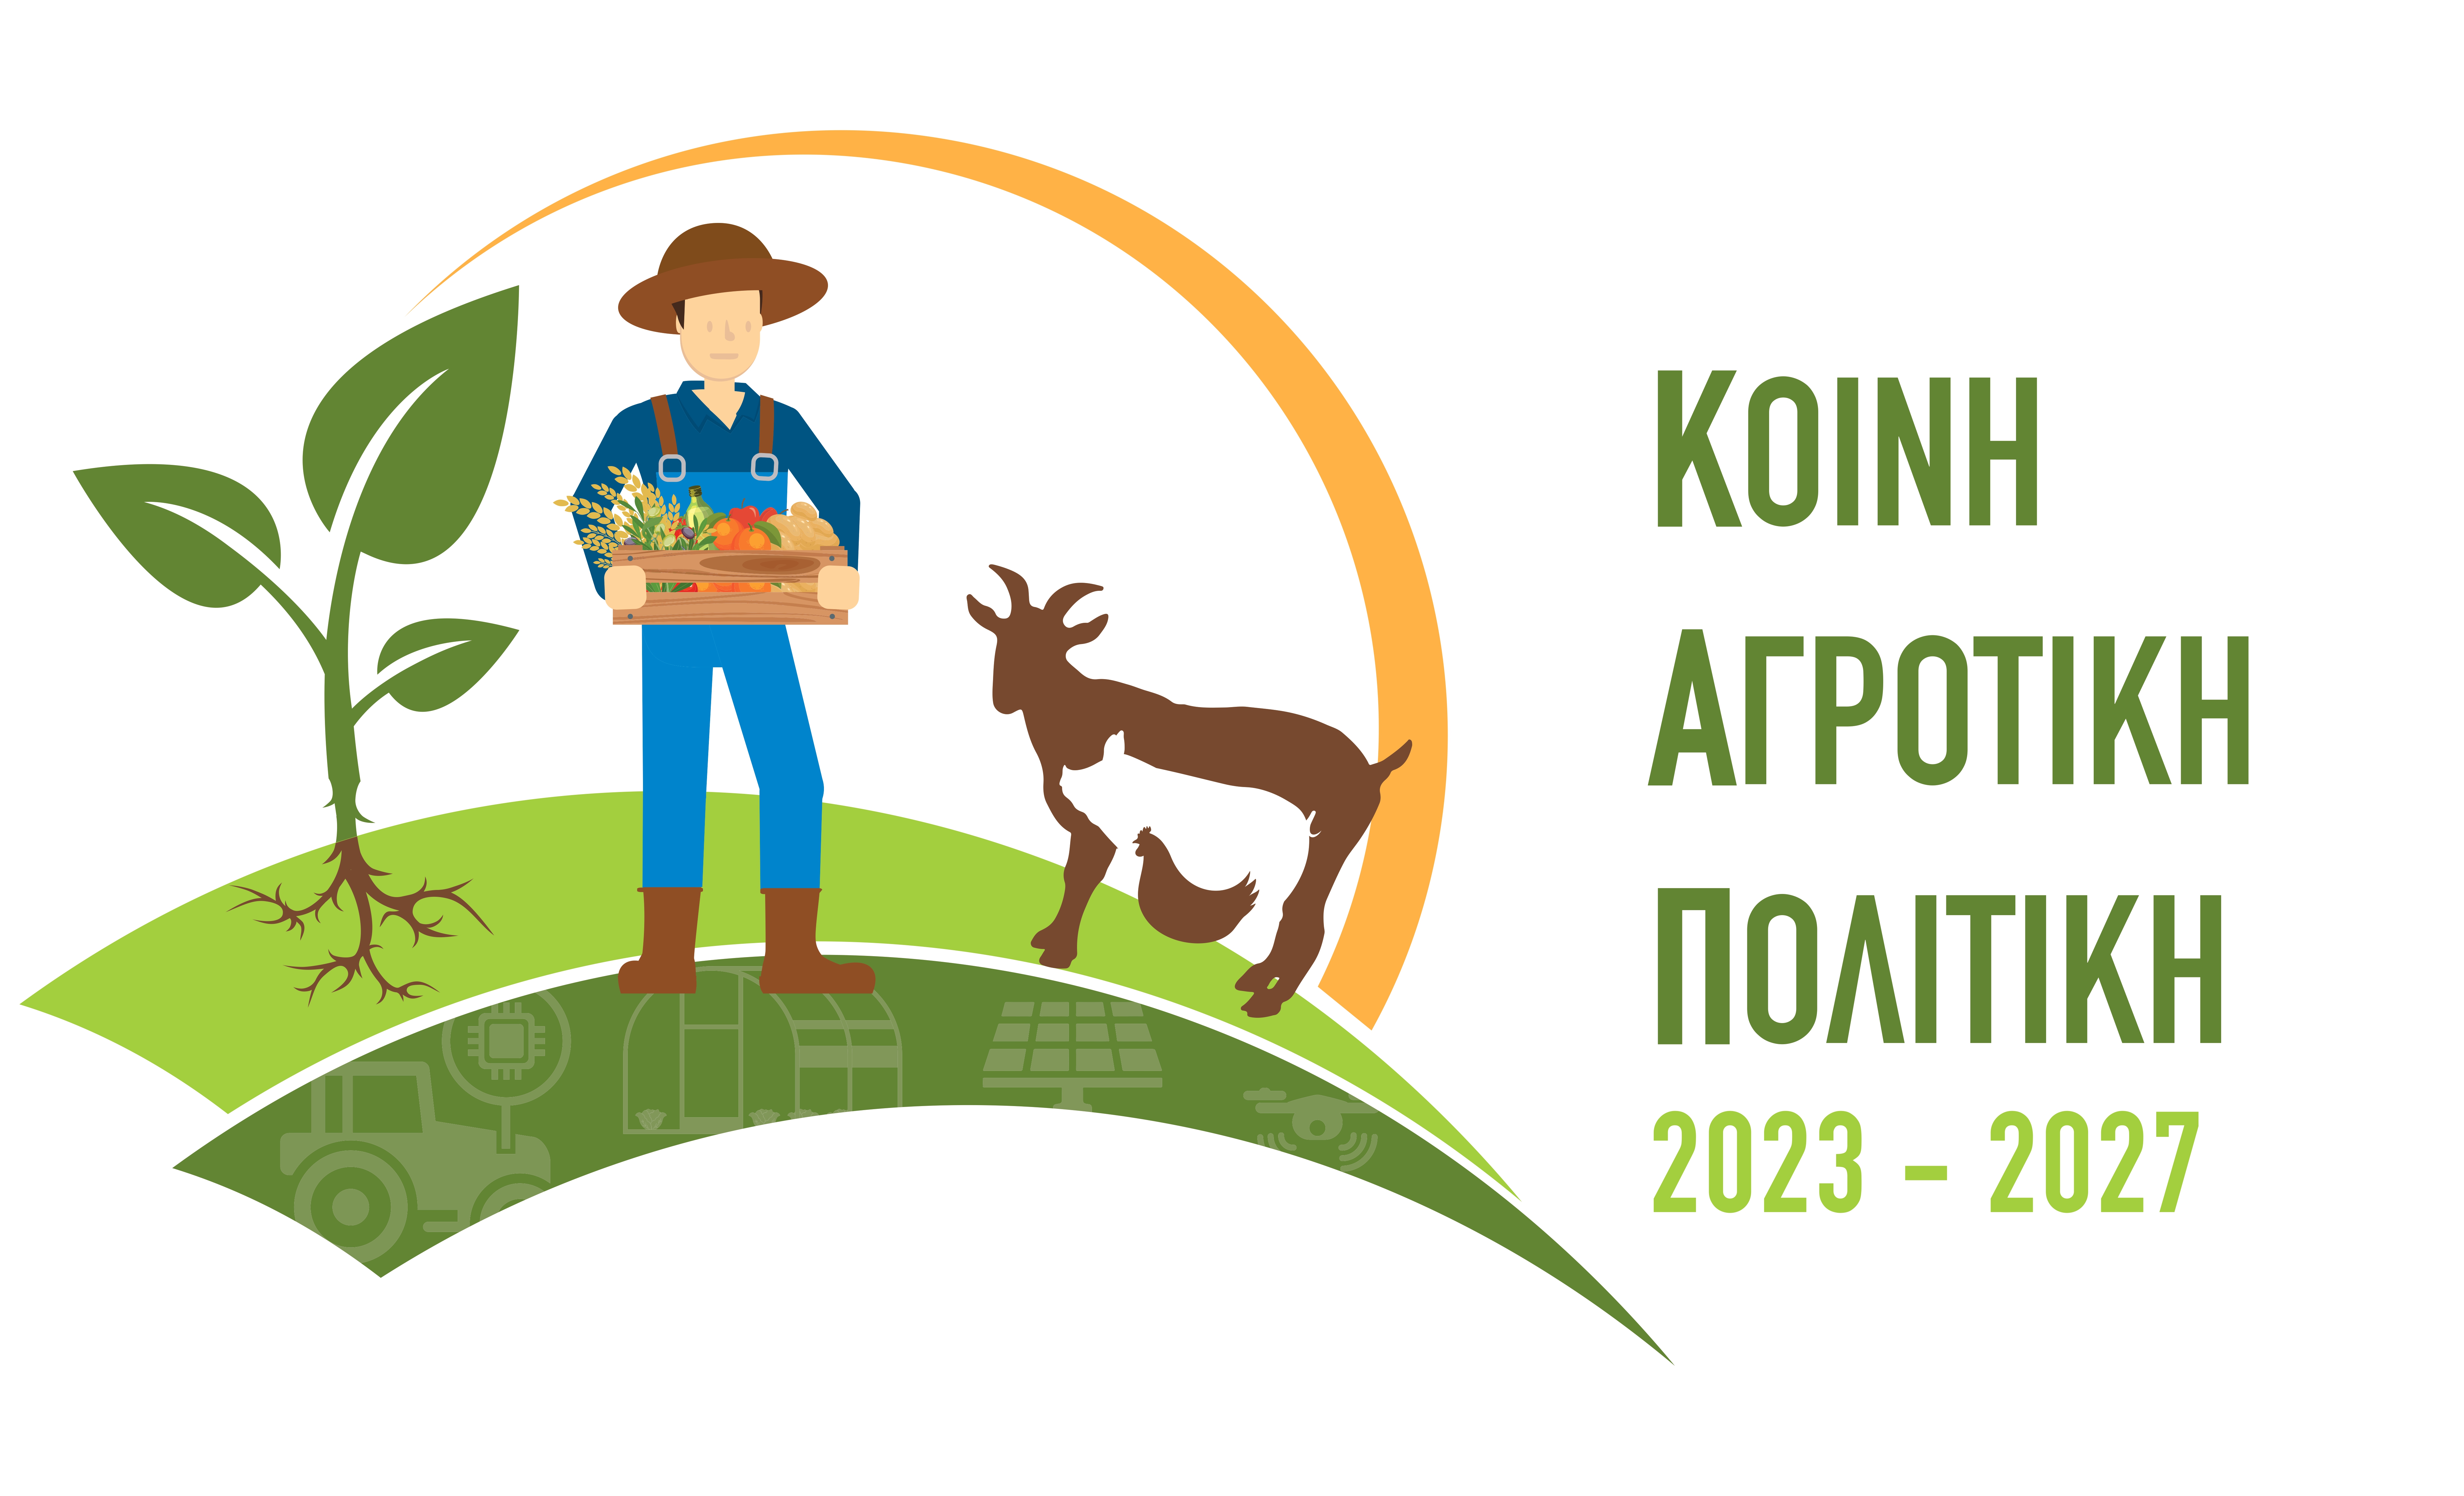 Στρατηγικό Σχεδίο Κοινής Αγροτικής Πολτικής 2023-2027 